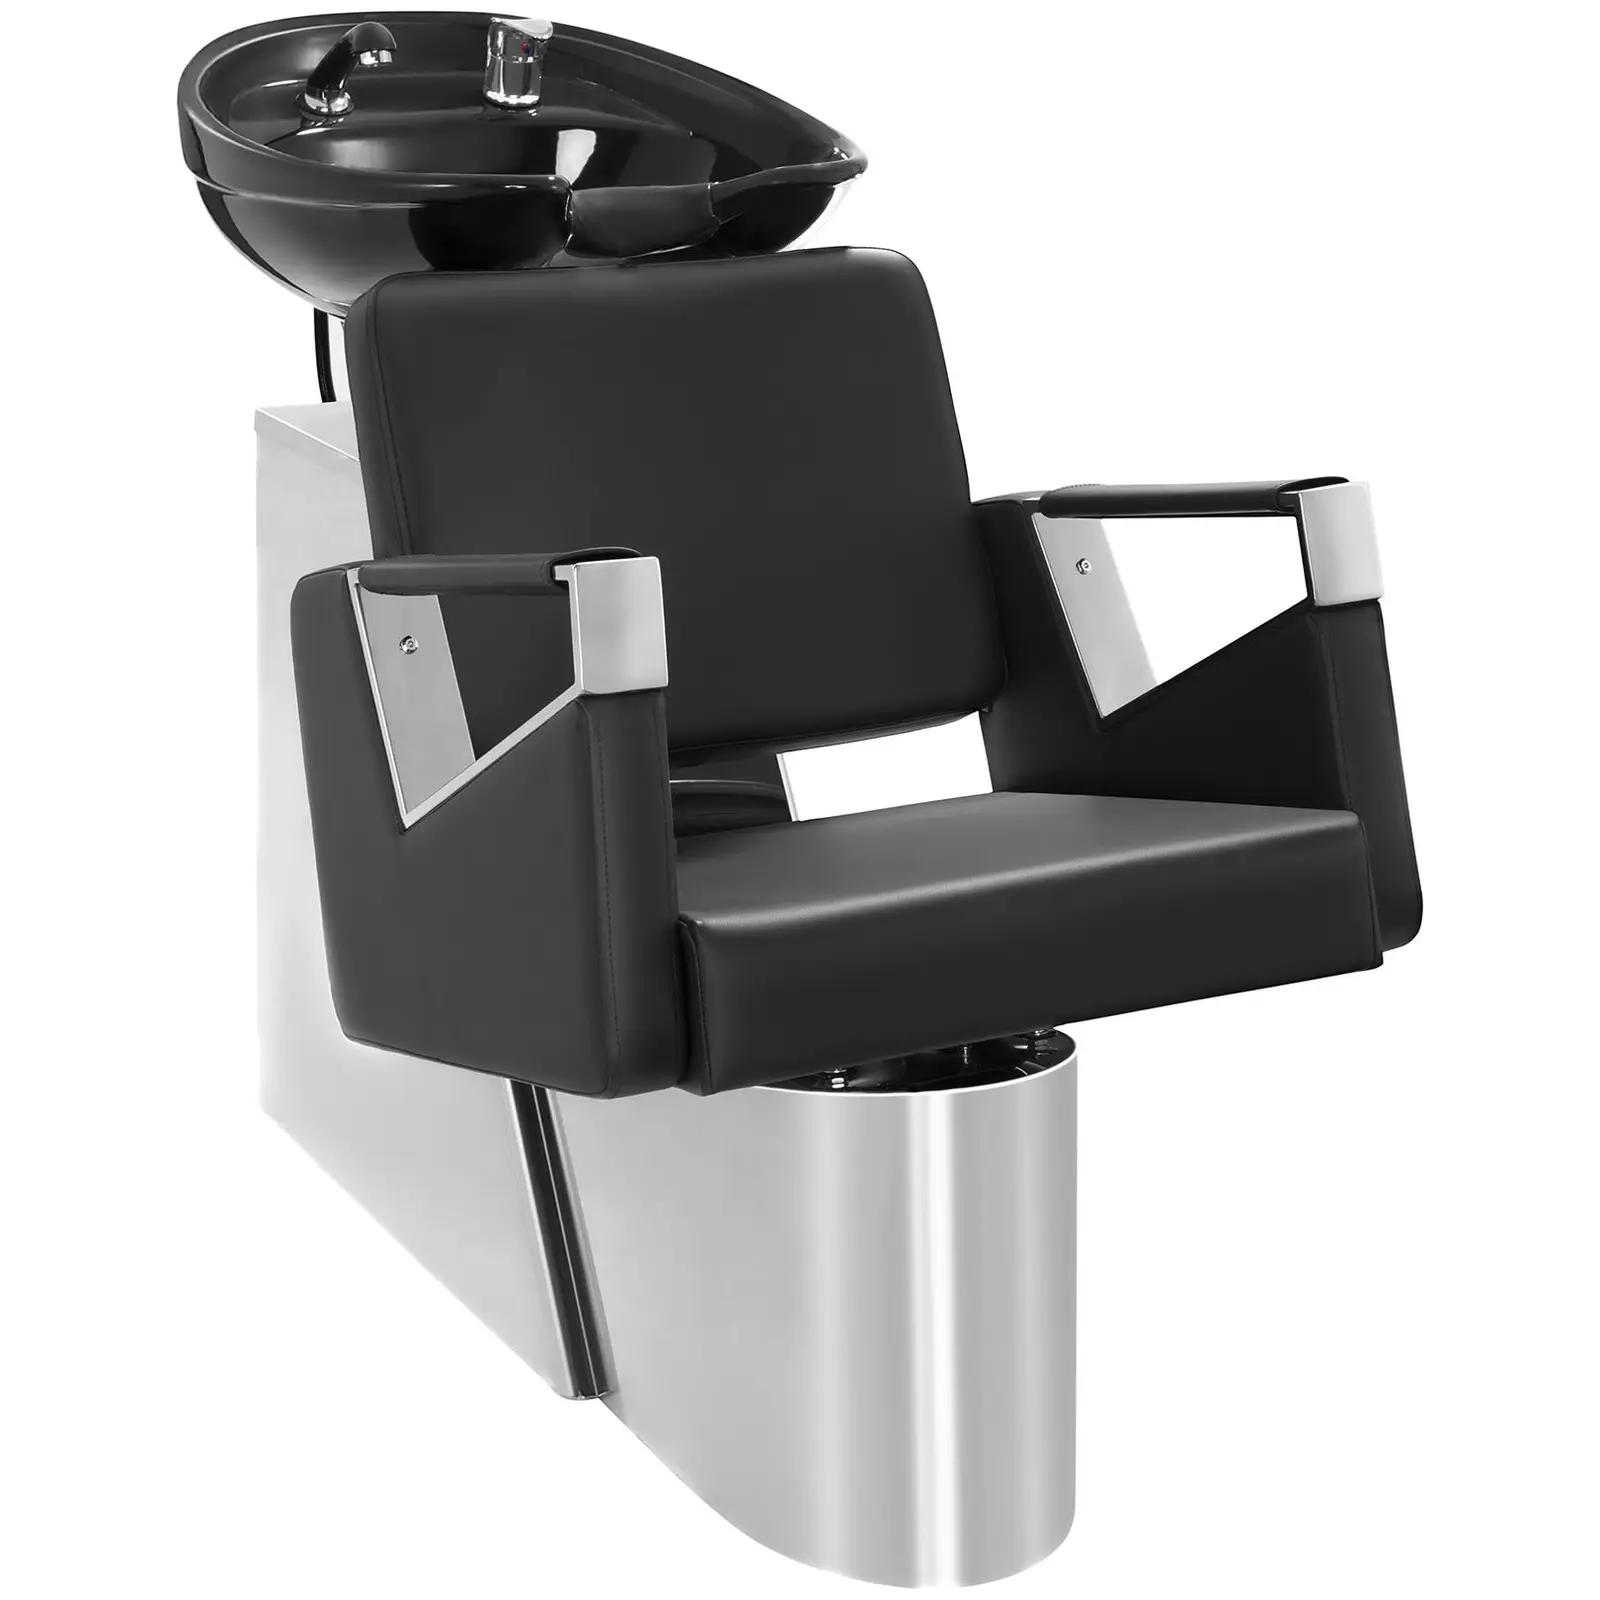 Fodrász fejmosó fotellel - 600x505 mm - Black - rozsdamentes acél alap 